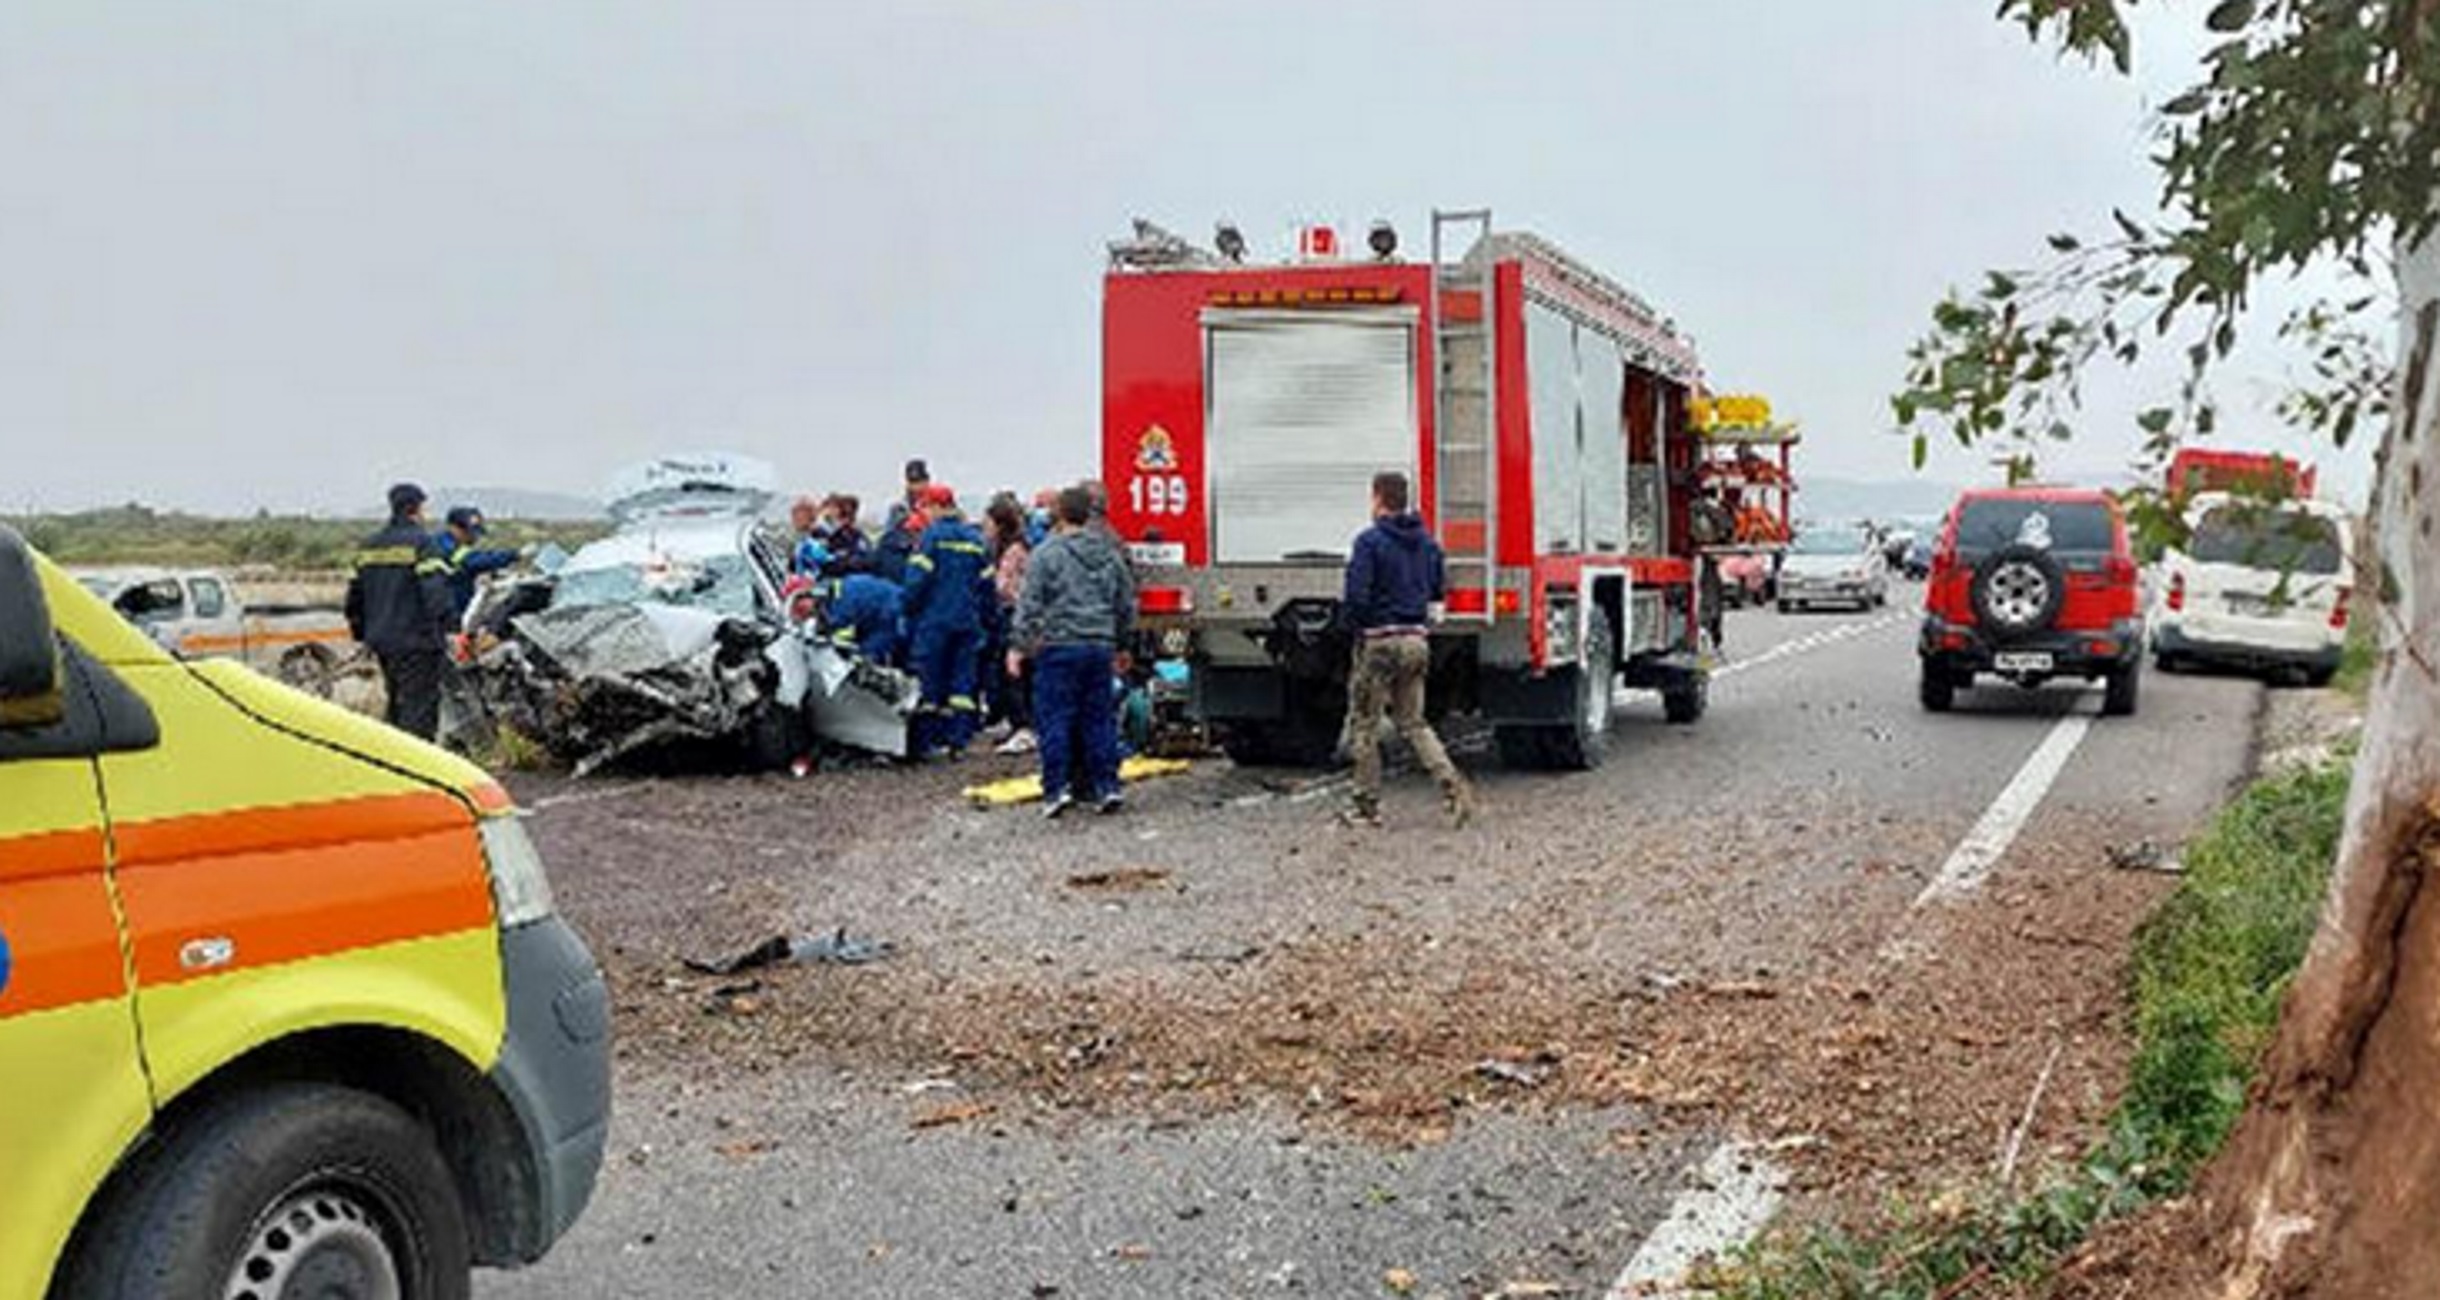 Μεσολόγγι: Τροχαίο με νεκρό οδηγό αυτοκινήτου, εικόνες από το σημείο